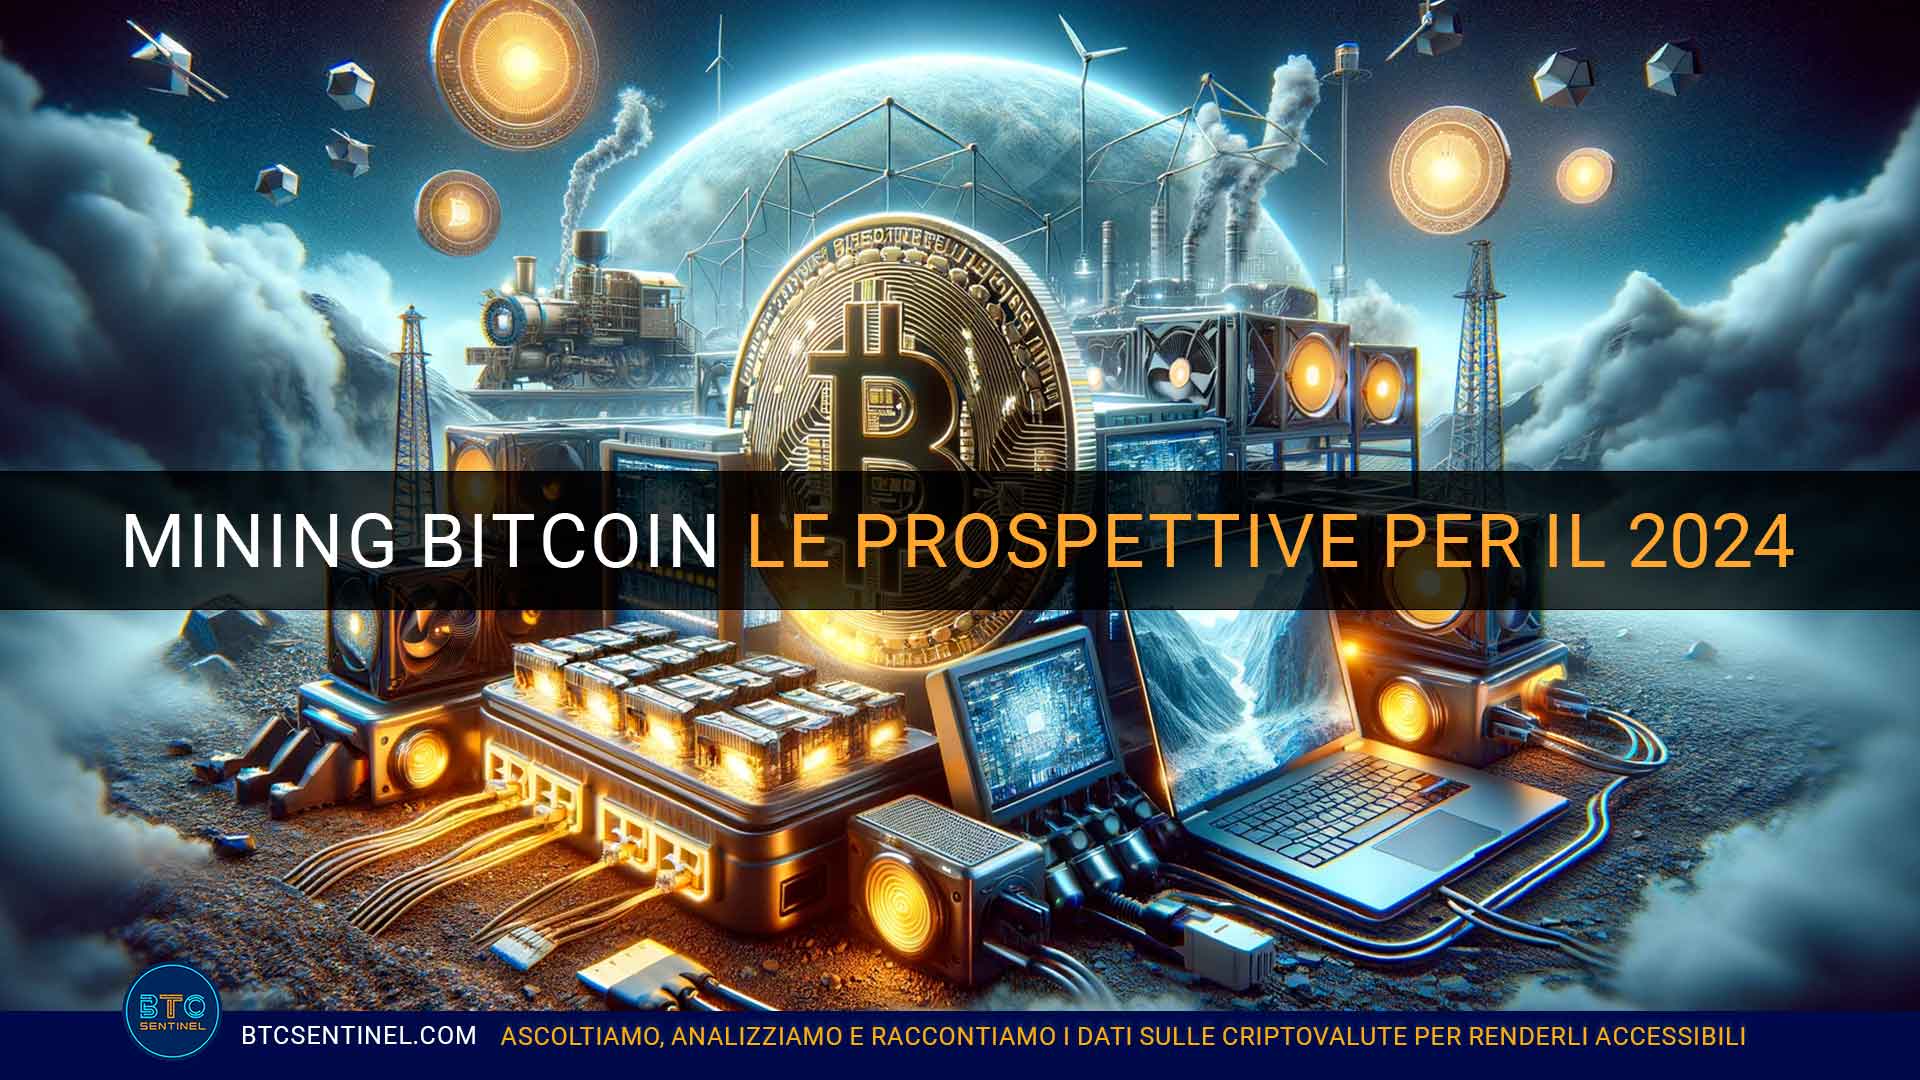 Bitcoin mining: le prospettive dopo l'halving del 2024